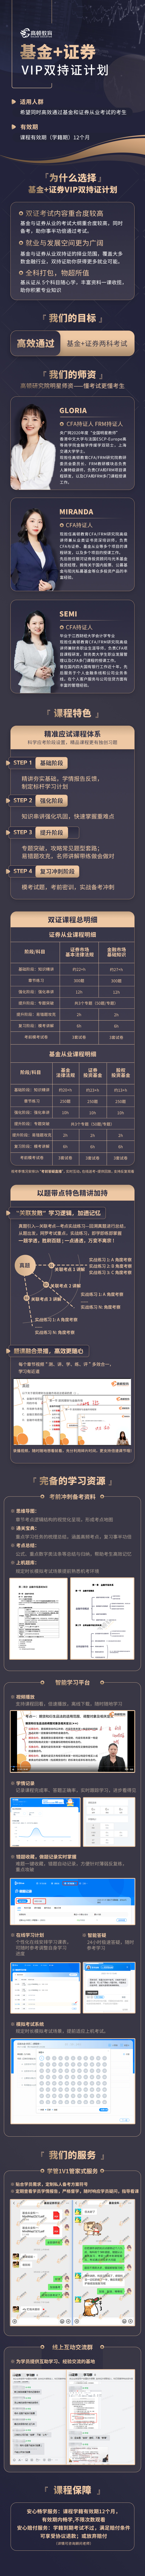 https://simg01.gaodunwangxiao.com/uploadfiles/product-center/202312/06/21d82_20231206162350.jpg